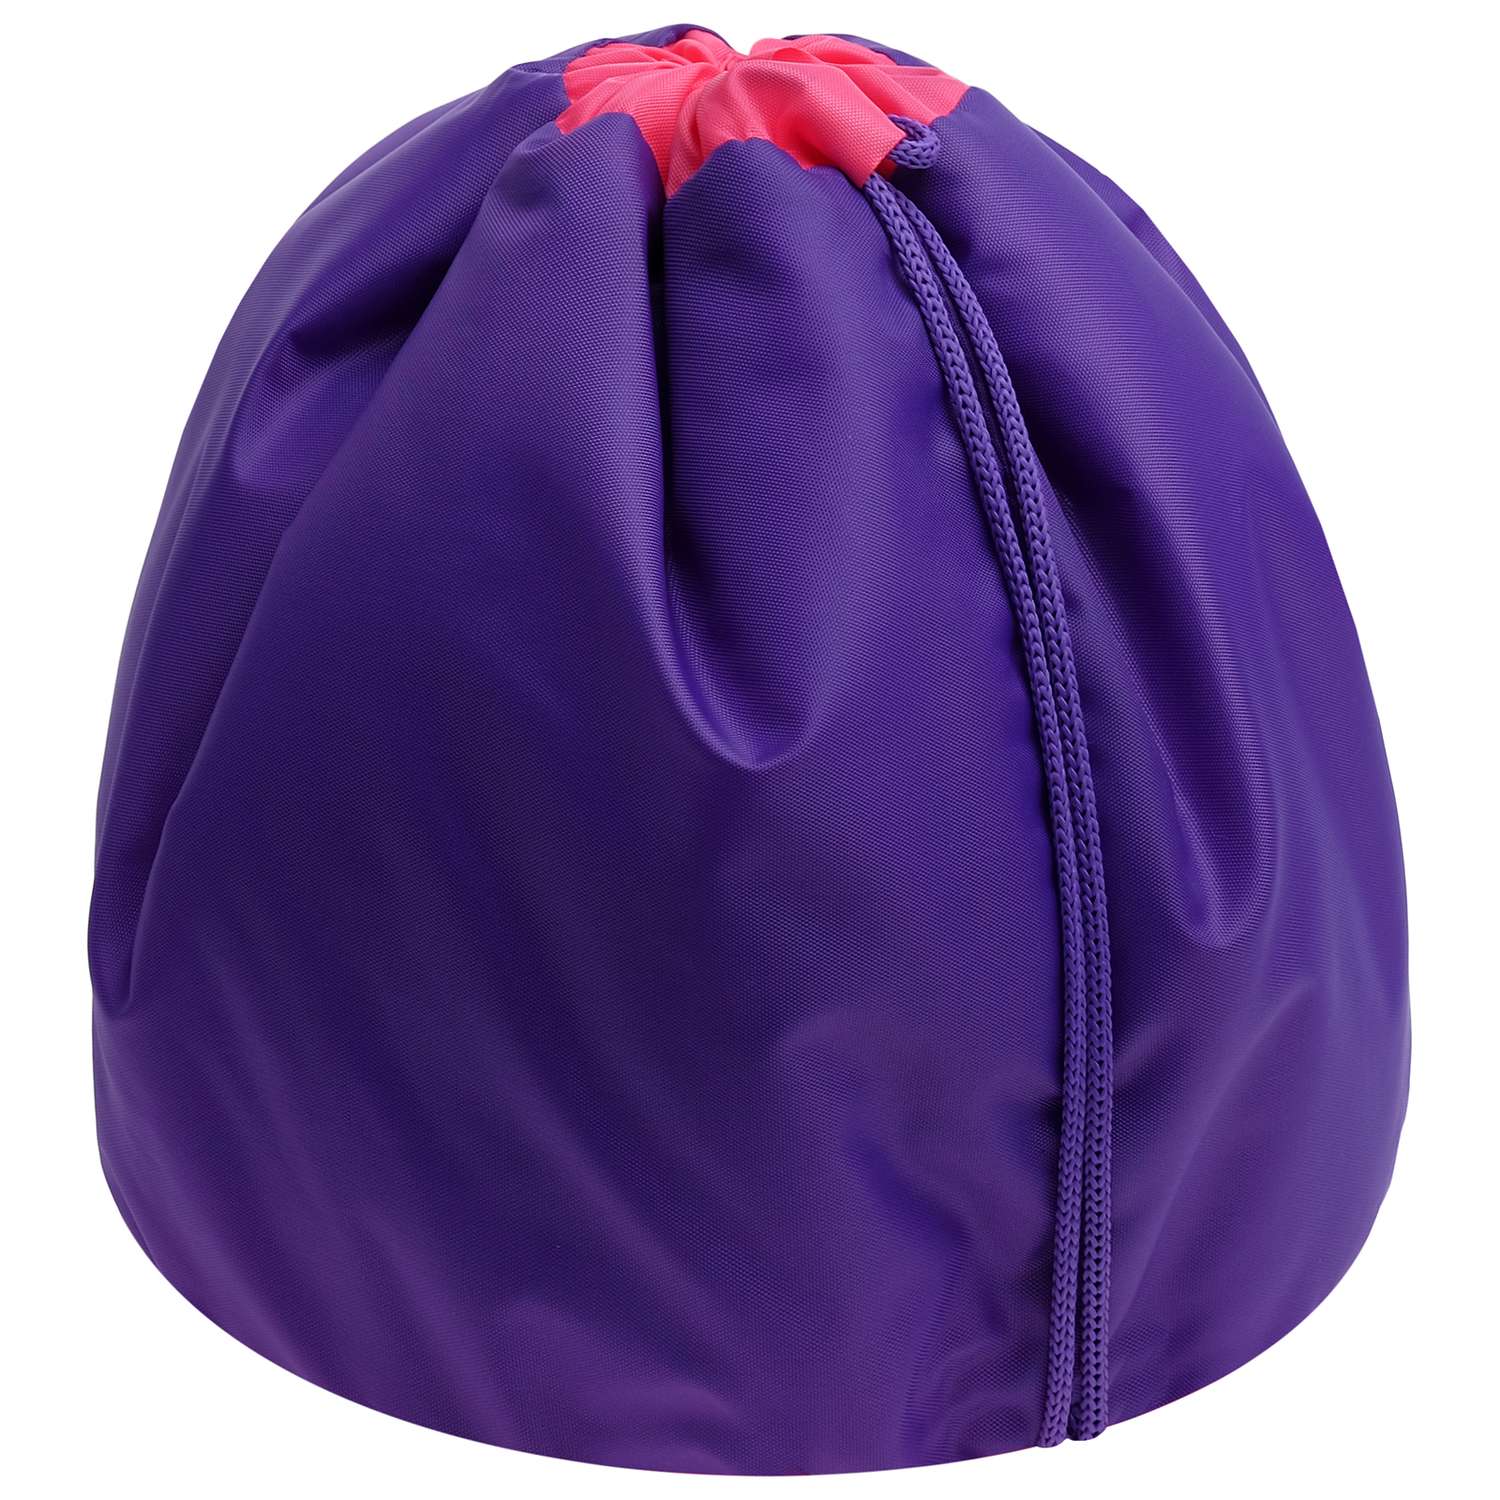 Чехол Grace Dance для мяча гимнастического утепленный цвет фиолетовый - фото 1